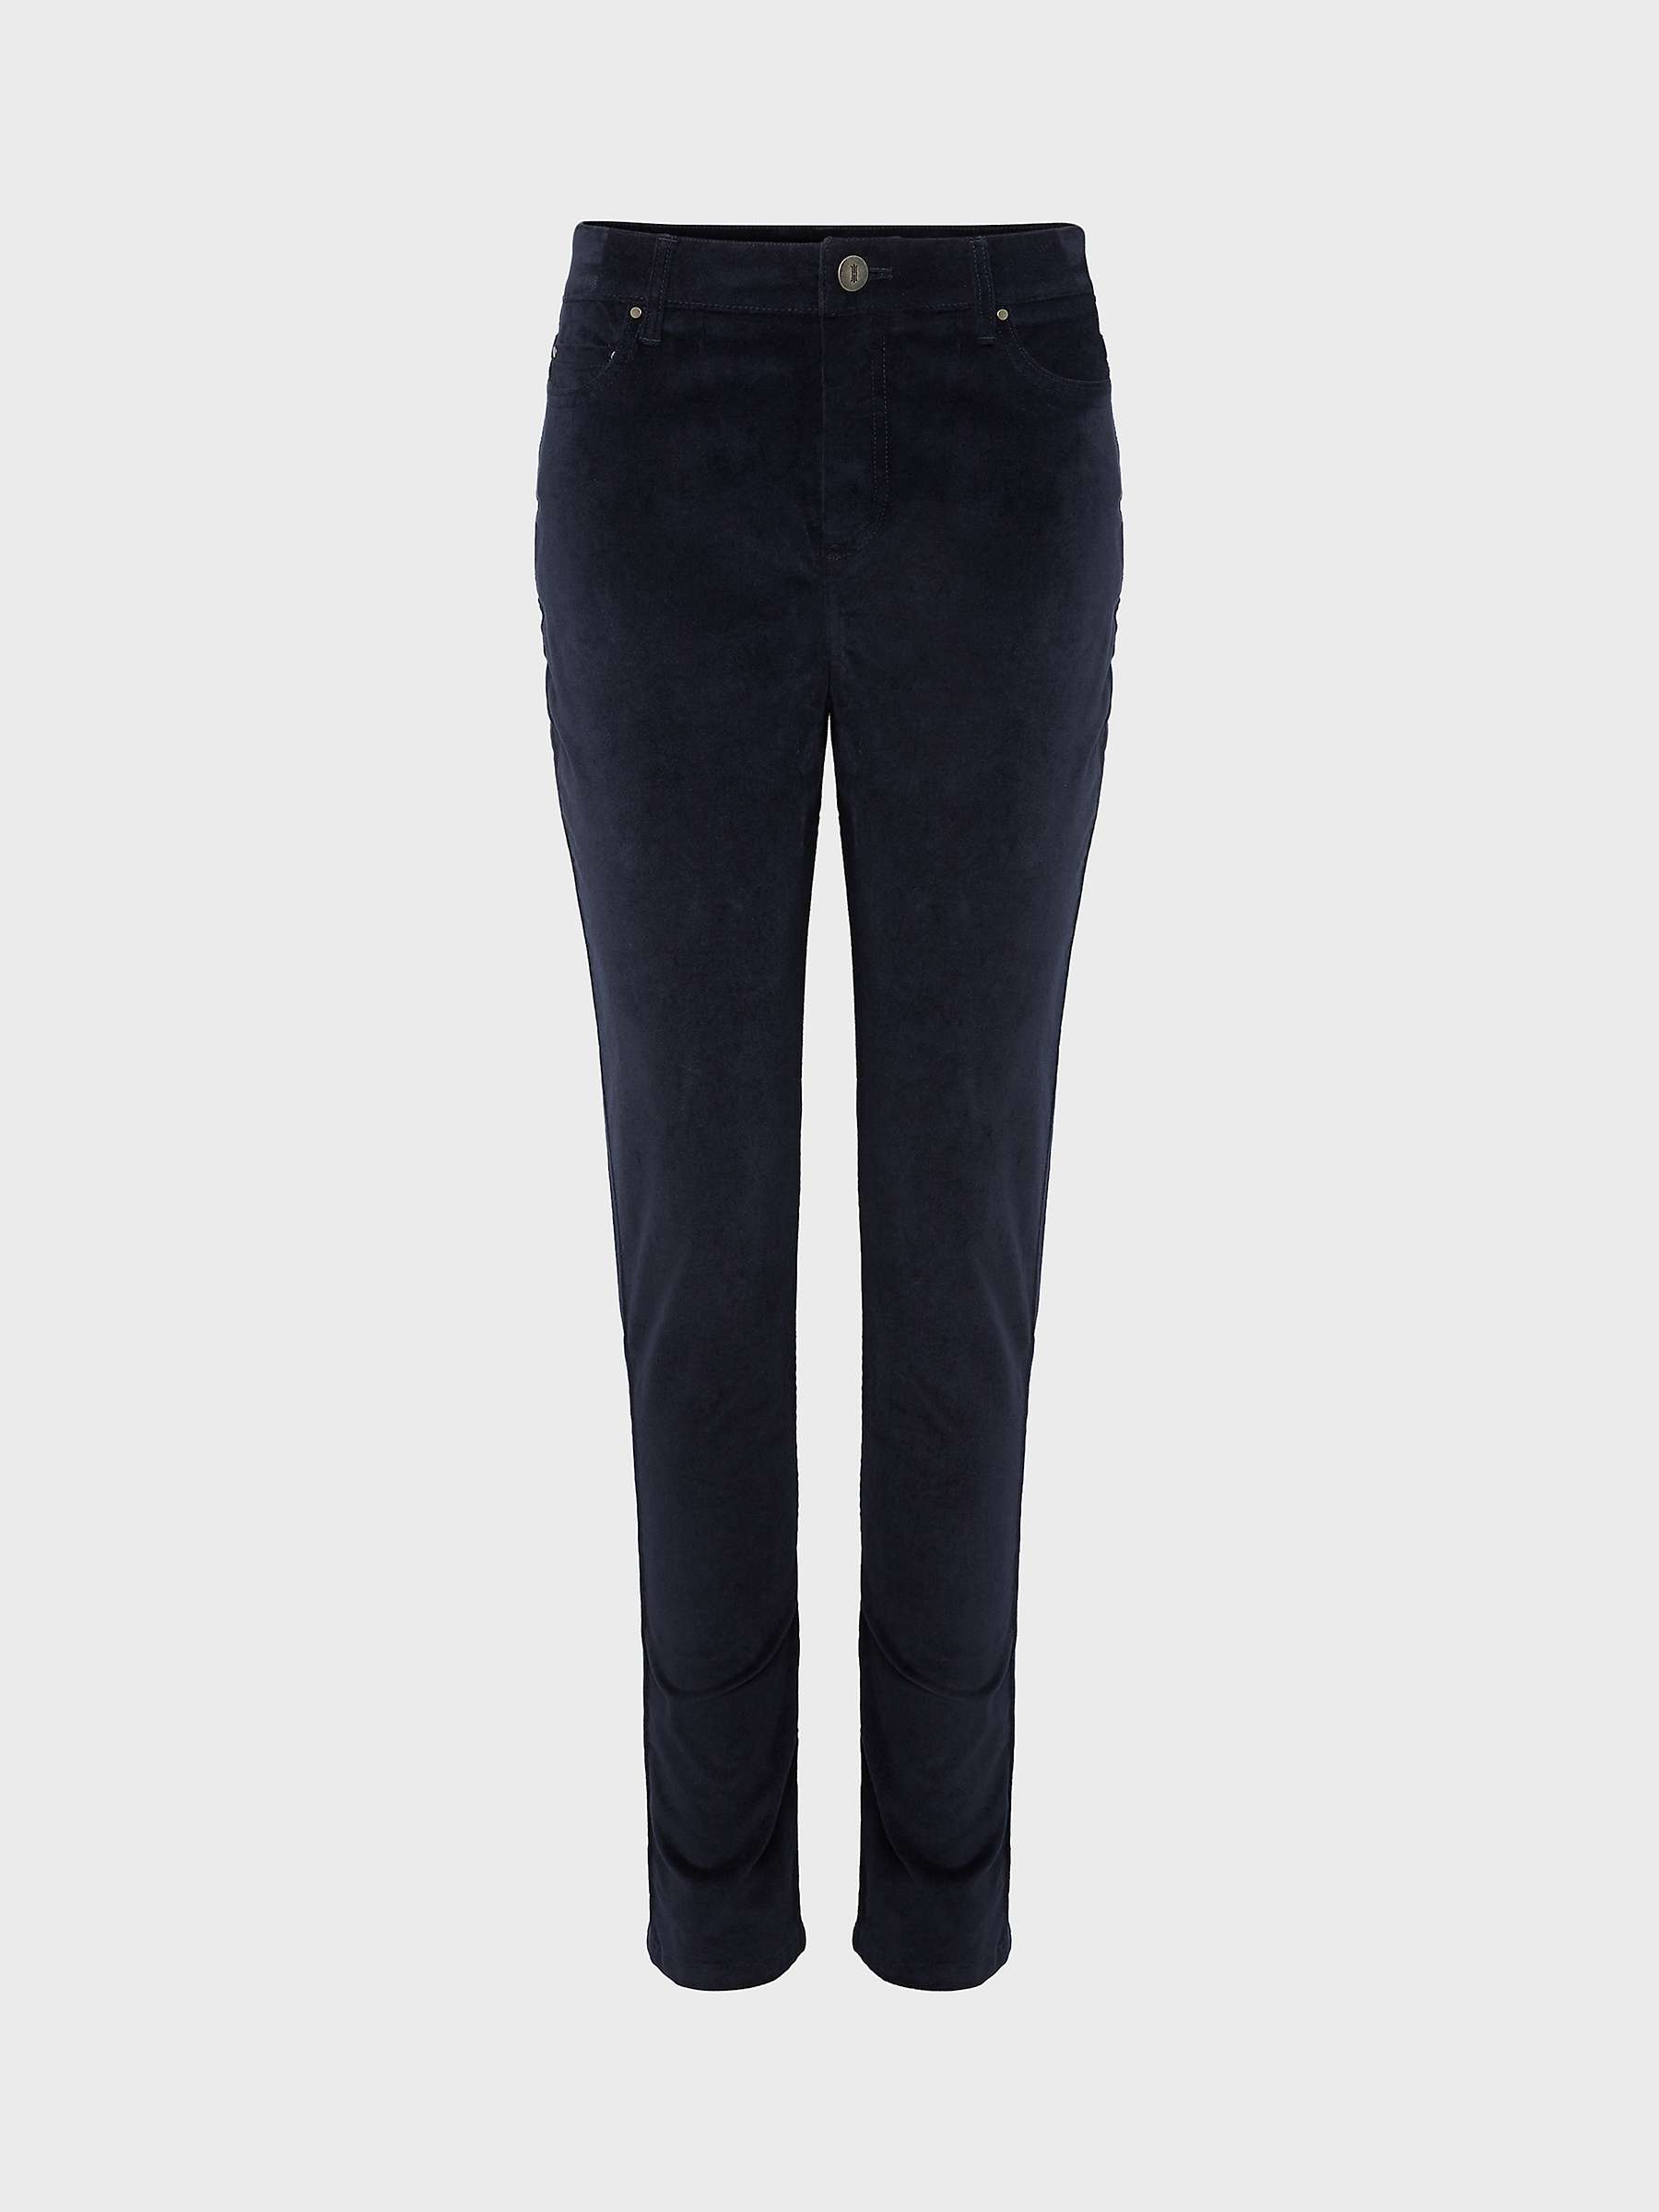 Buy Hobbs Gia Velvet Skinny Jeans Online at johnlewis.com